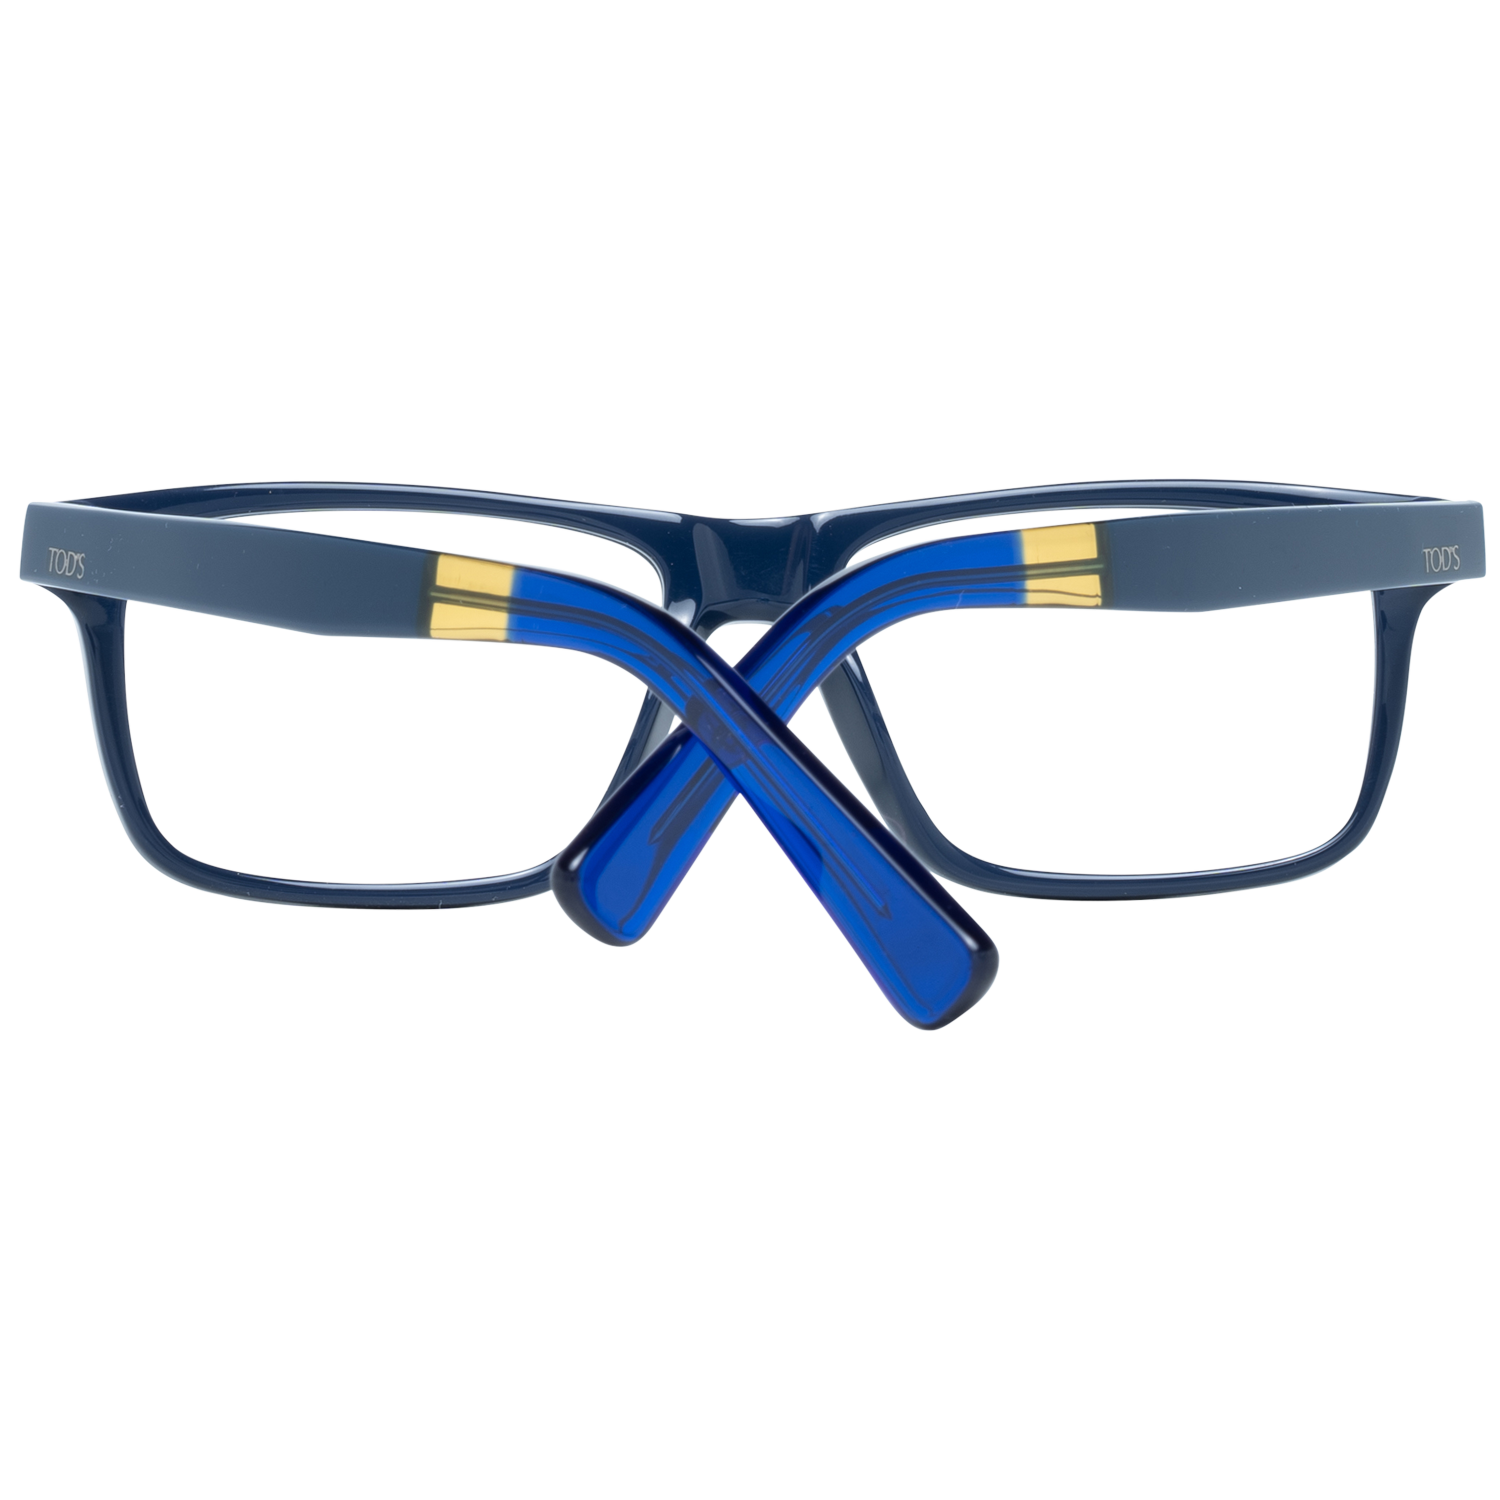 Tods Frames Tods Glasses Men's Blue Rectangle Frames TO5166 092 54mm Eyeglasses Eyewear UK USA Australia 